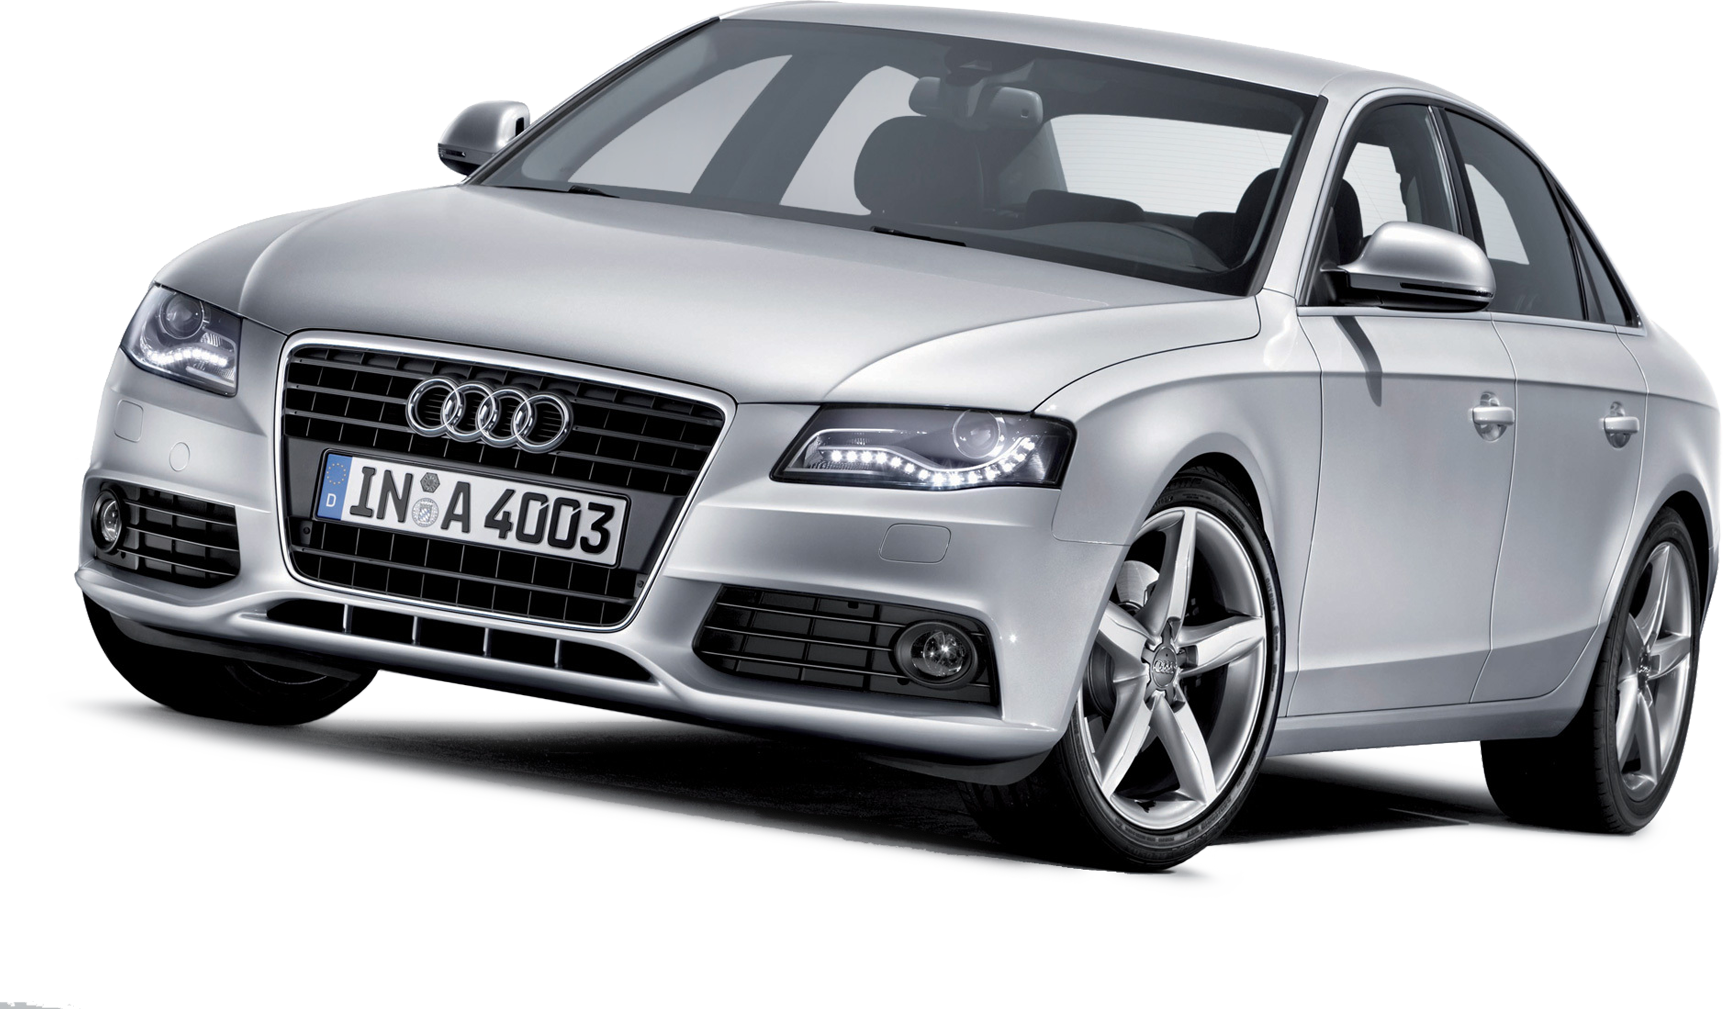 Audi PNG Image